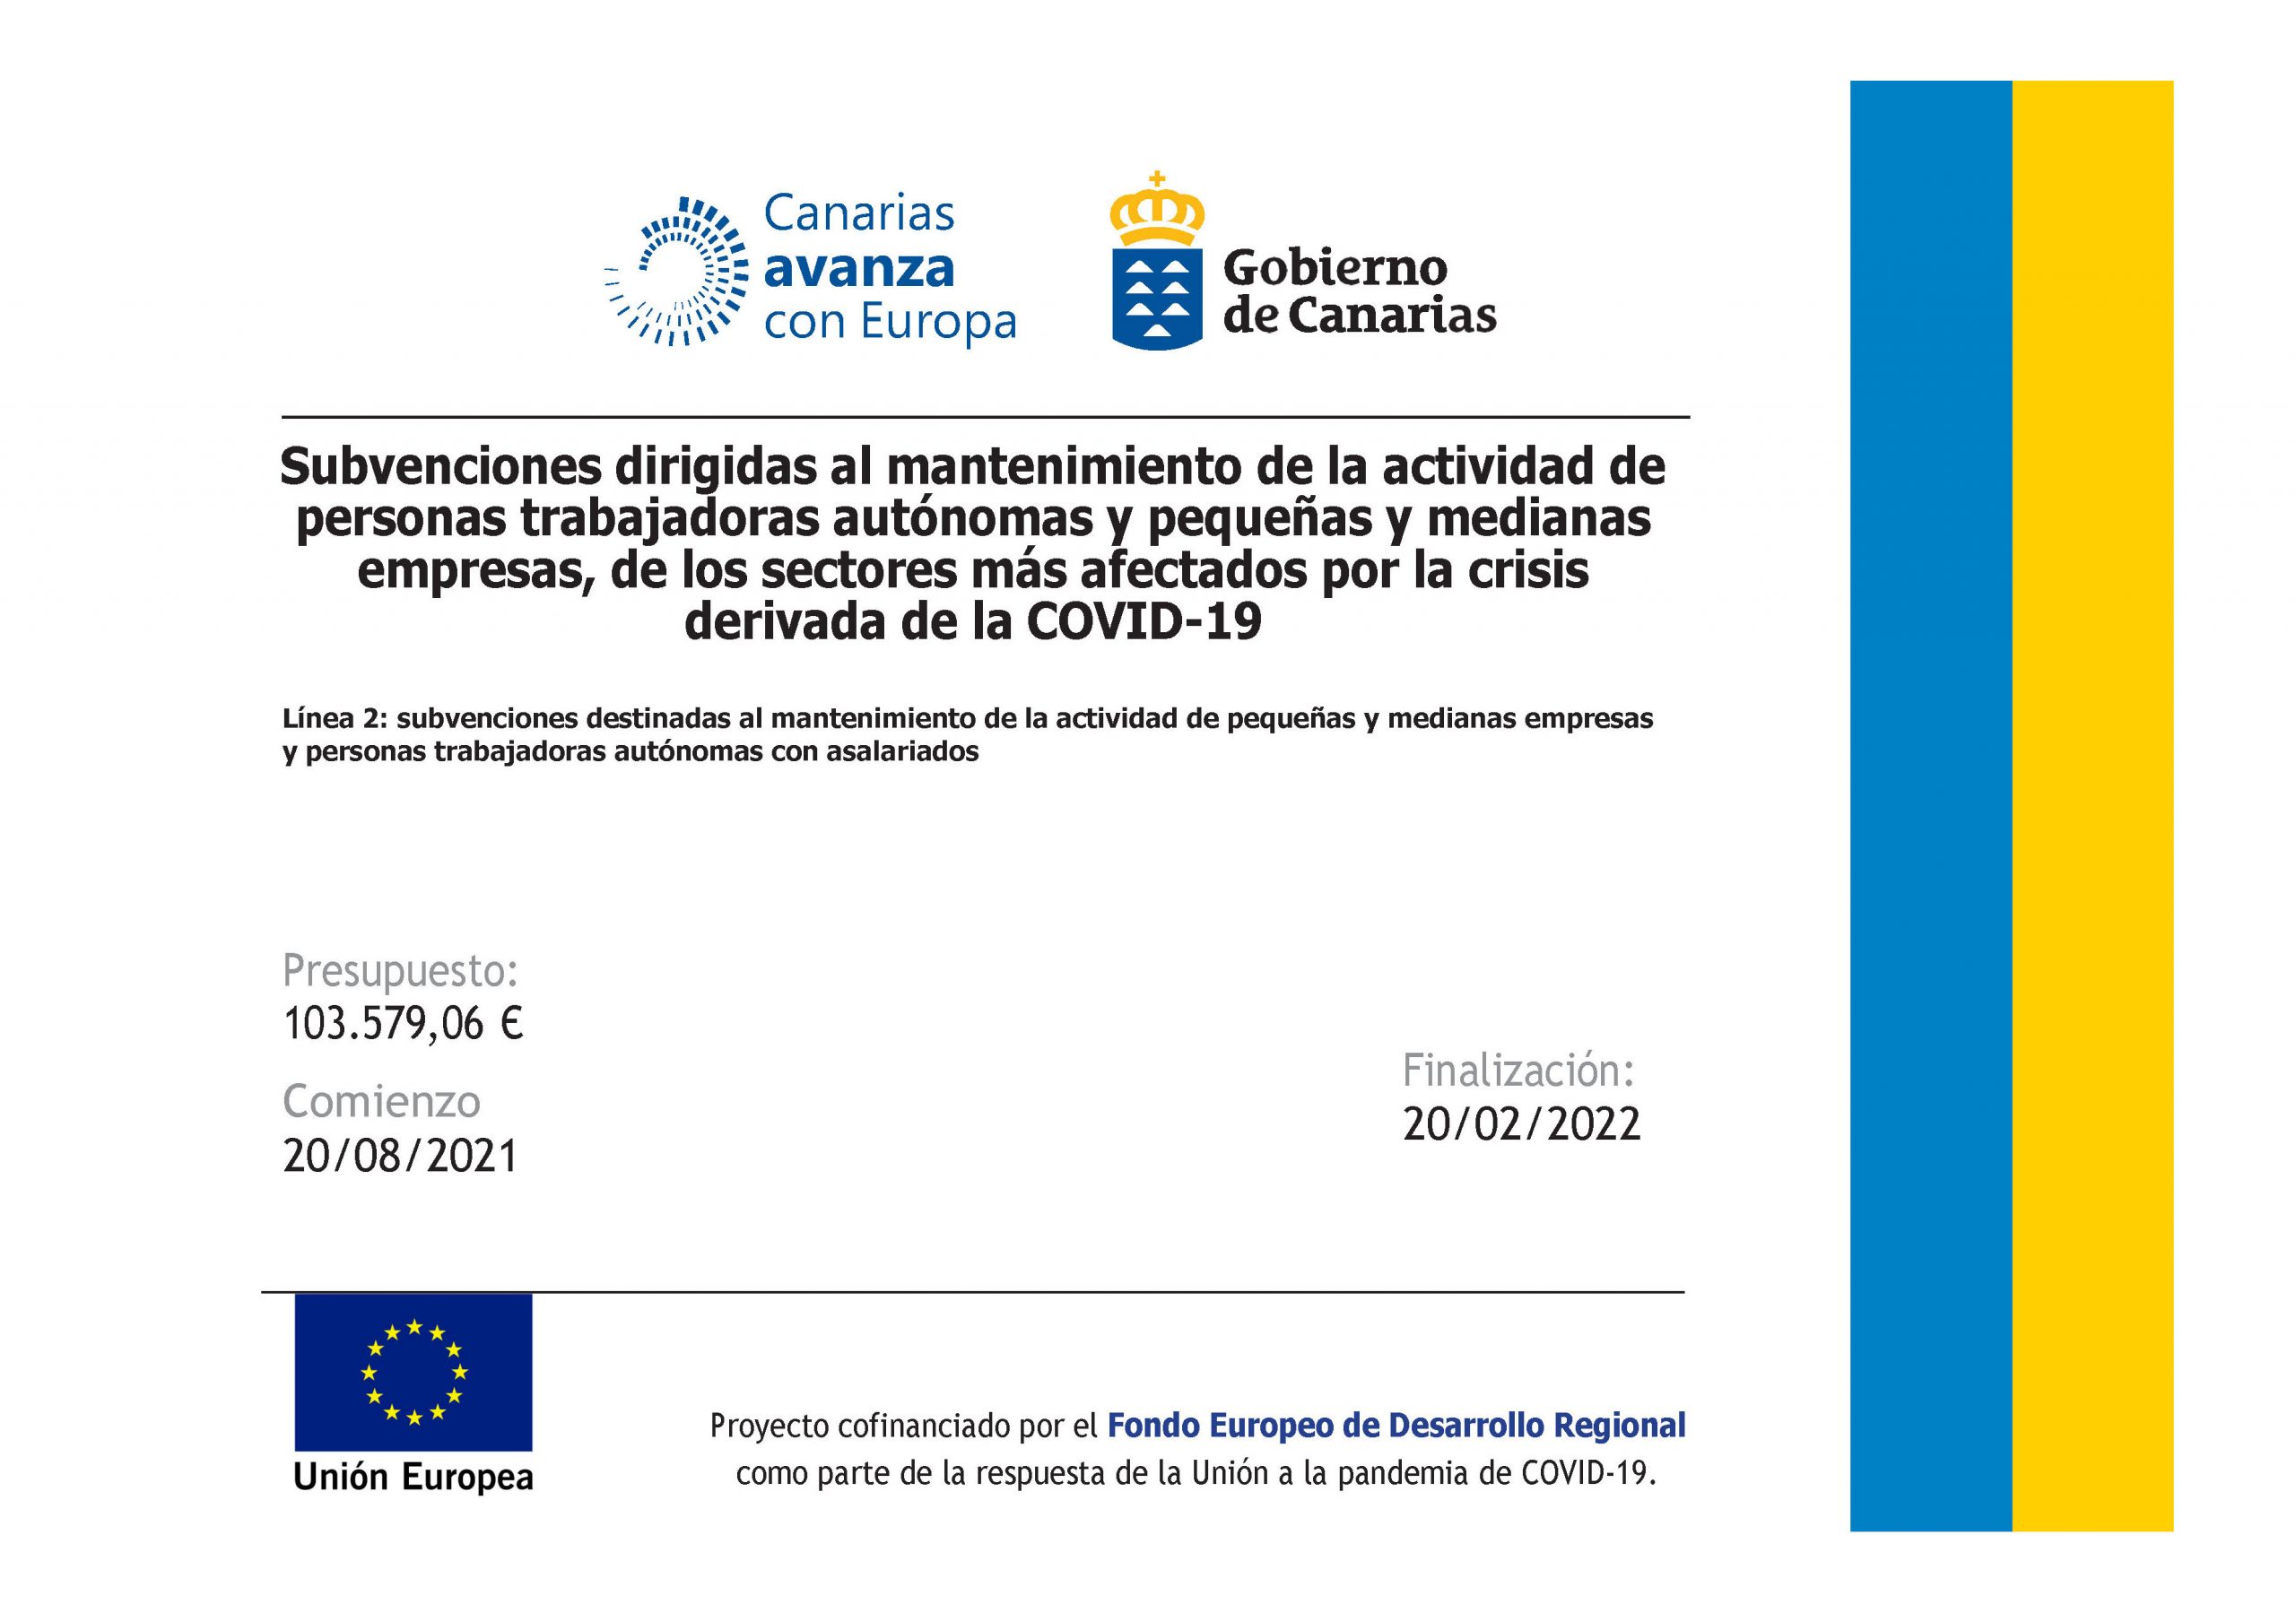 Canarias Avanza con Europa subvenciones destinadas al mantenimiento de la actividad de pequeñas y medianas empresas y personas trabajadoras autónomas con asalariados-new